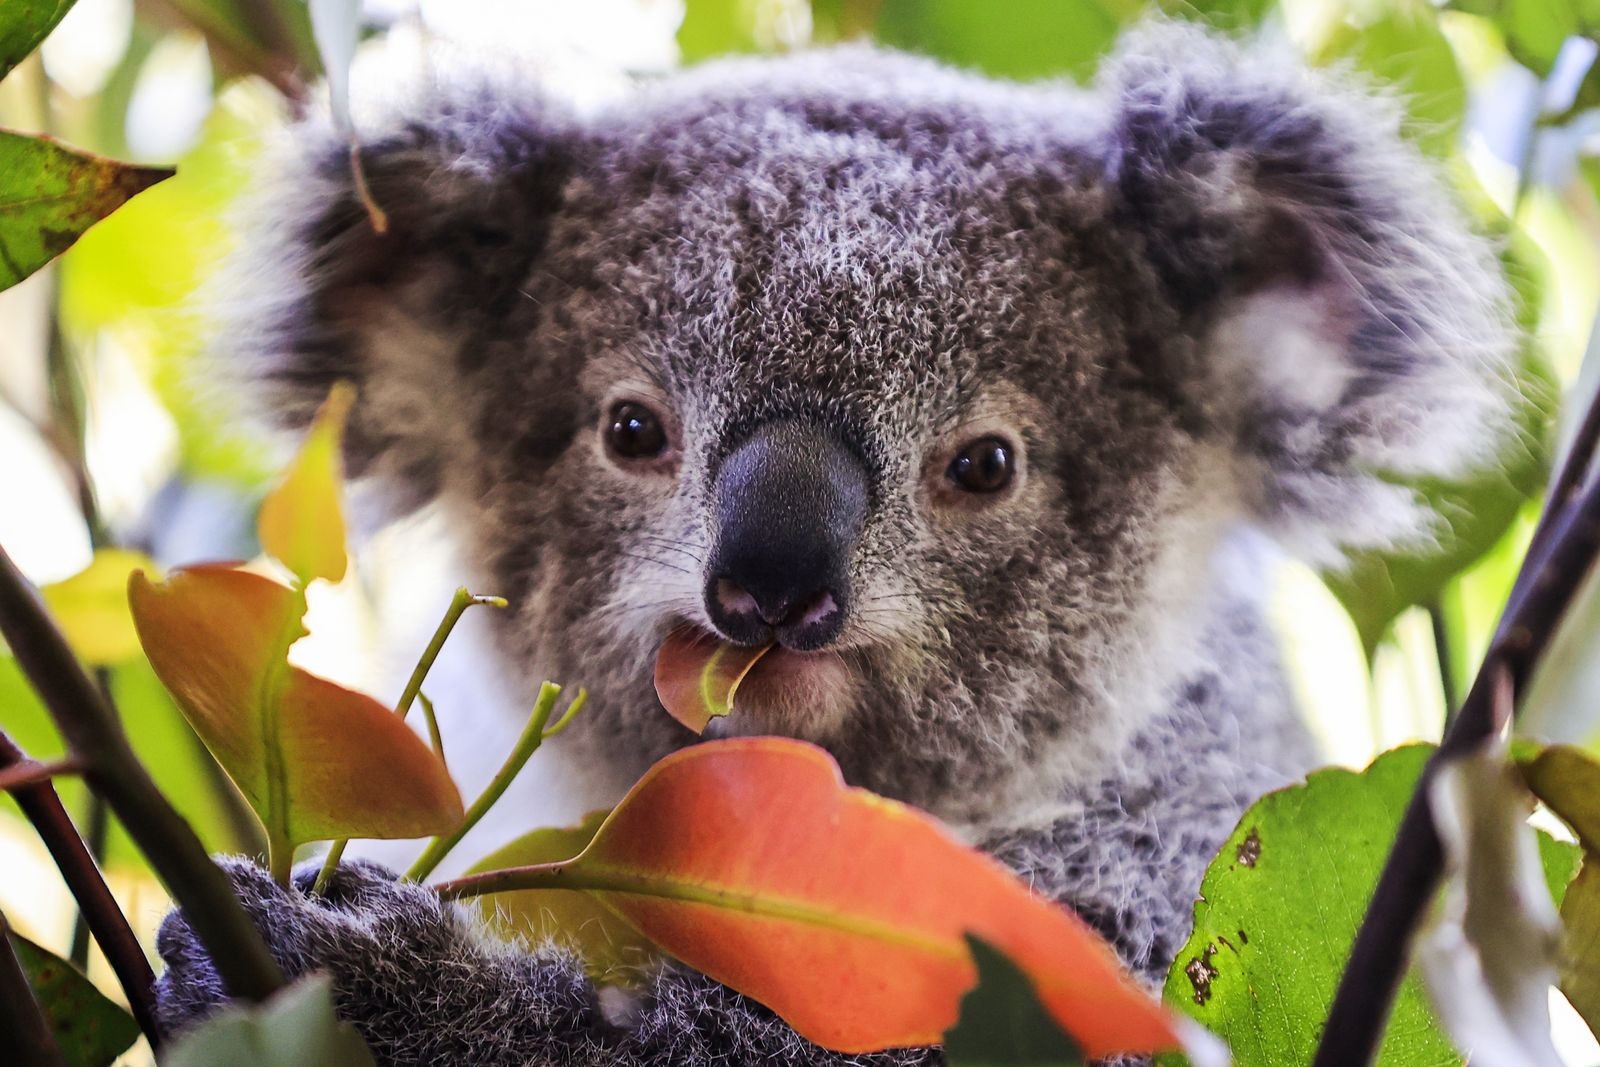 Australia Begins Vaccinating Hundreds of Koalas Against Chlamydia